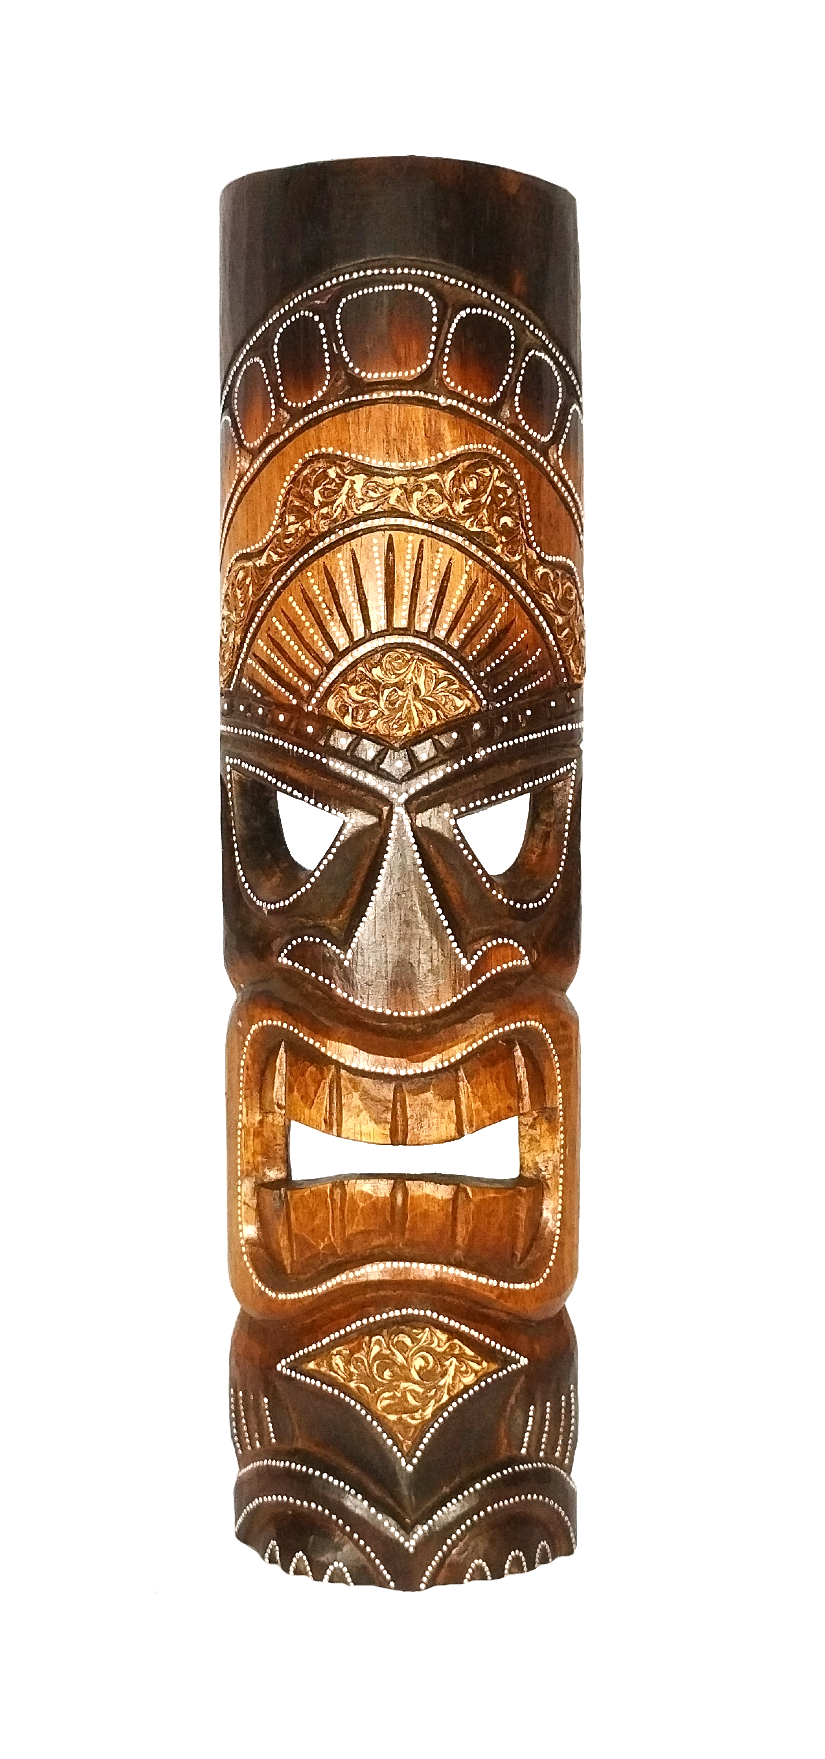 Carranca Decorativa de Parede Máscara Madeira 50cm